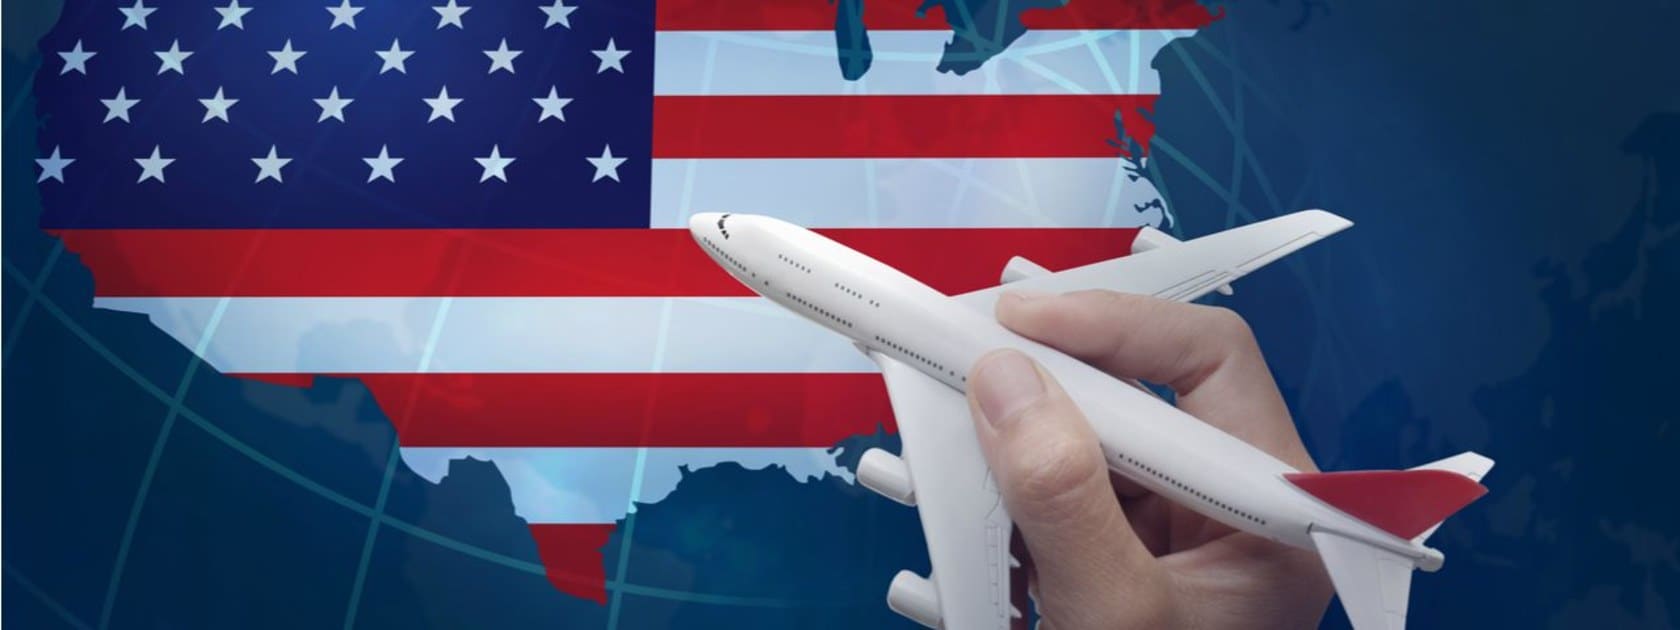  一只手拿着玩具飞机在美国地图上